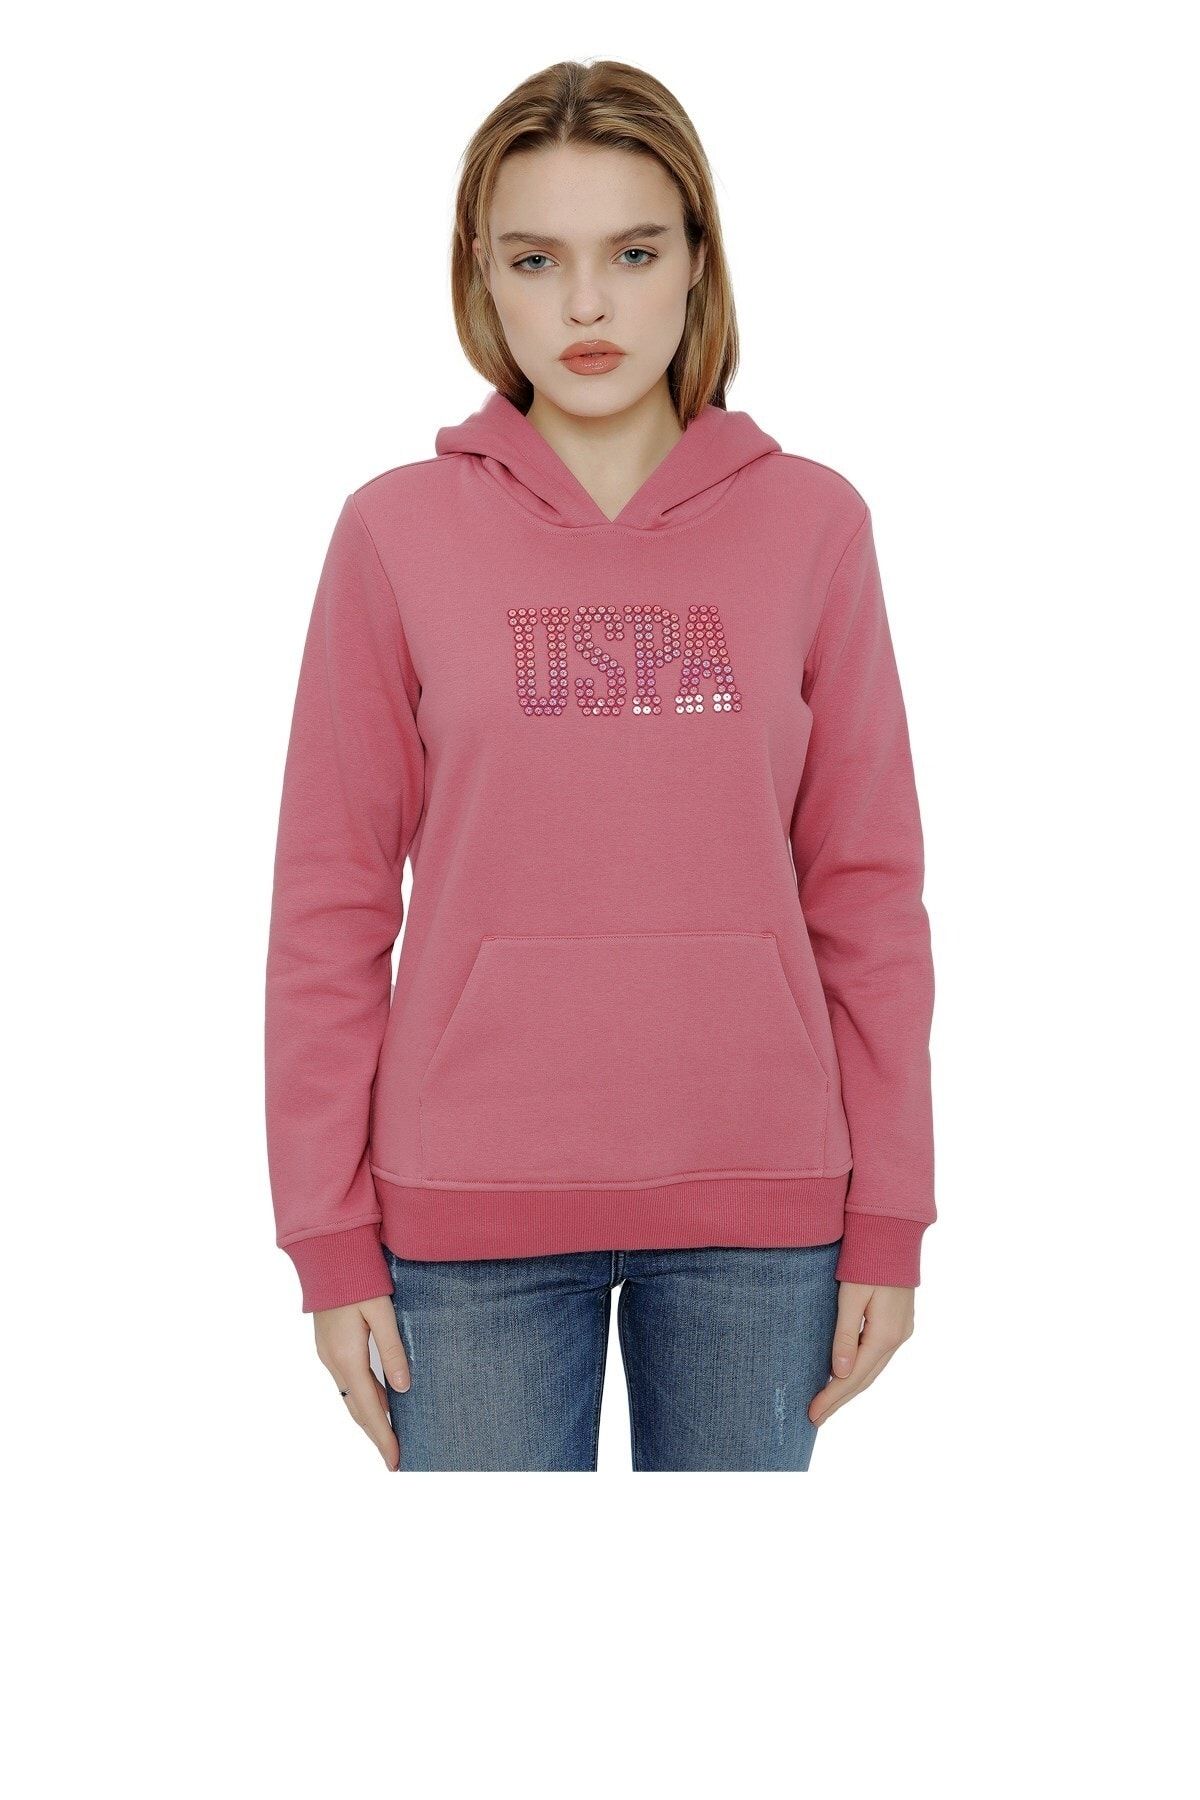 U.S. Polo Assn. Kadın Sweatshirt 50256249-vr167